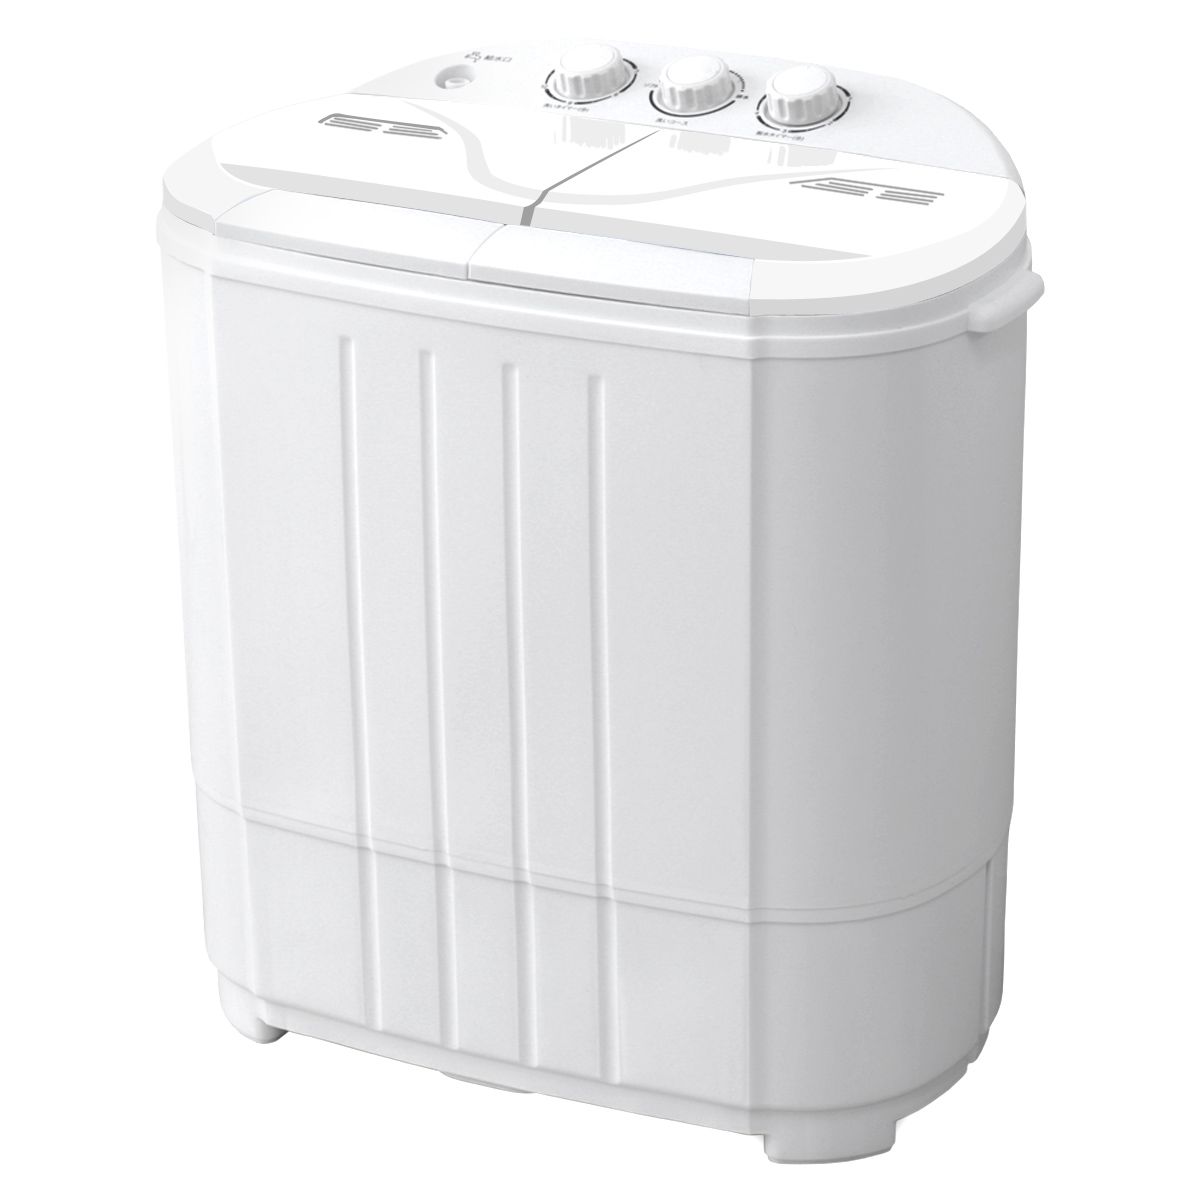 小型洗濯機 ミニ洗濯機 二層式洗濯機 別洗い 3.6kg 脱水機能付 洗濯機 分け洗い コンパクト